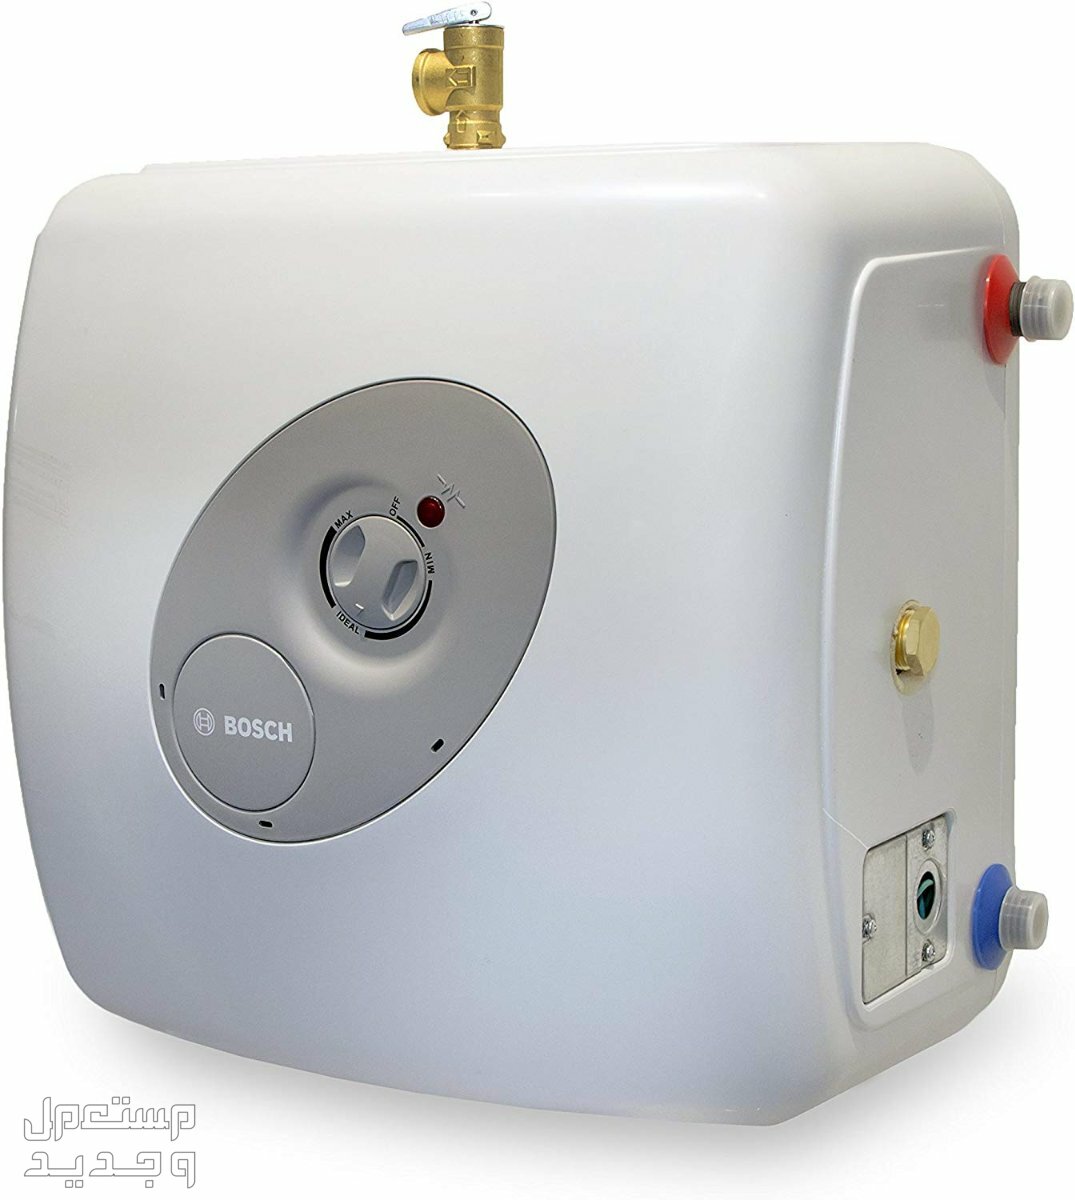 تعرف على أكثر 15 جهاز استهلاكاً للكهرباء في قطر سخان الماء الكهربائي Heater